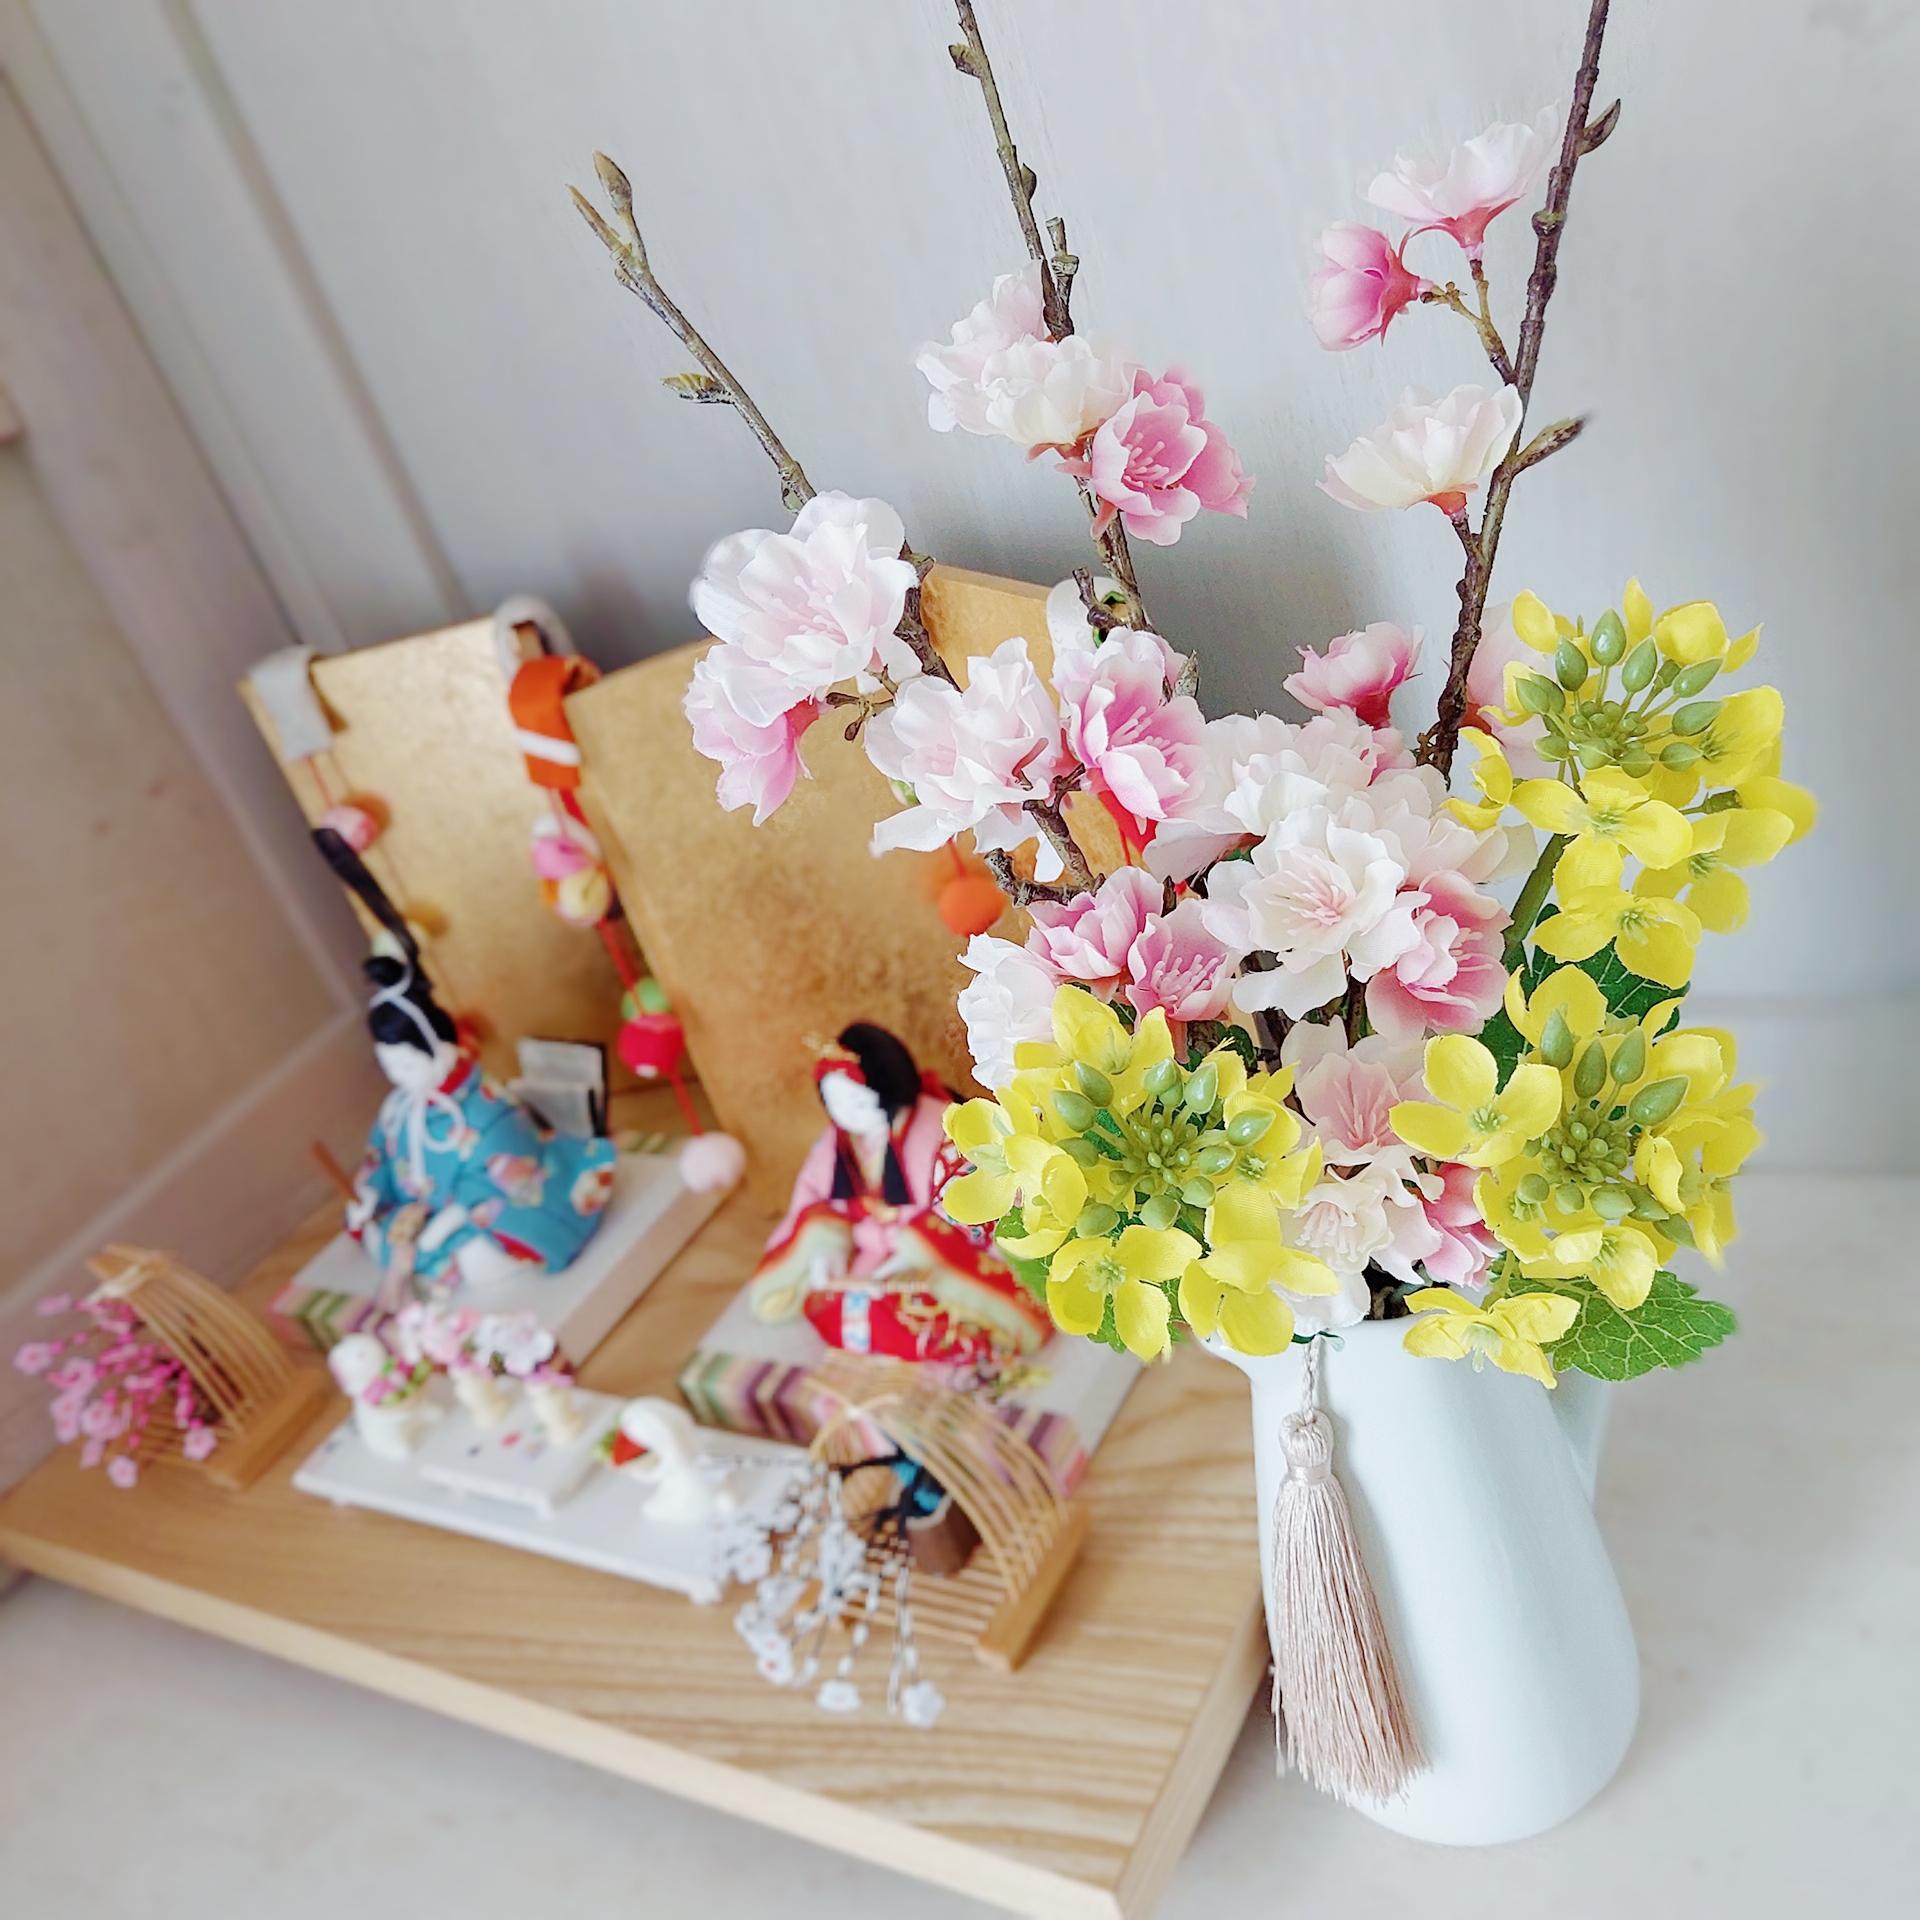 ひな祭りアレンジ(桃の節句)桜と菜の花✨ずっと飾れるオシャレな造花